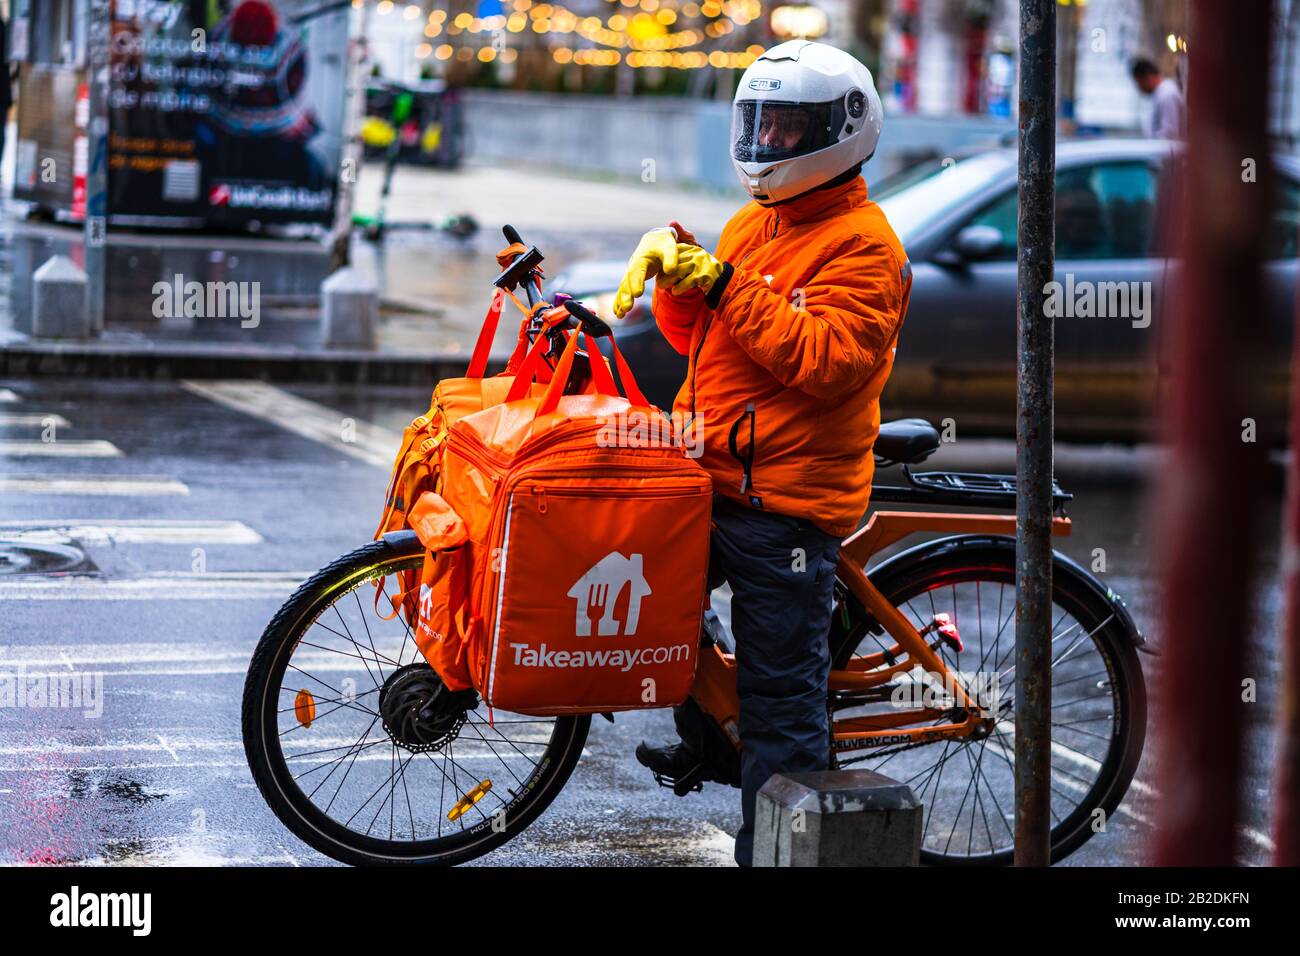 Jeune homme sur un vélo électrique avec le logo takeaway.com fournissant de la nourriture pendant une journée de pluie à Bucarest, Roumanie, 2020 Banque D'Images